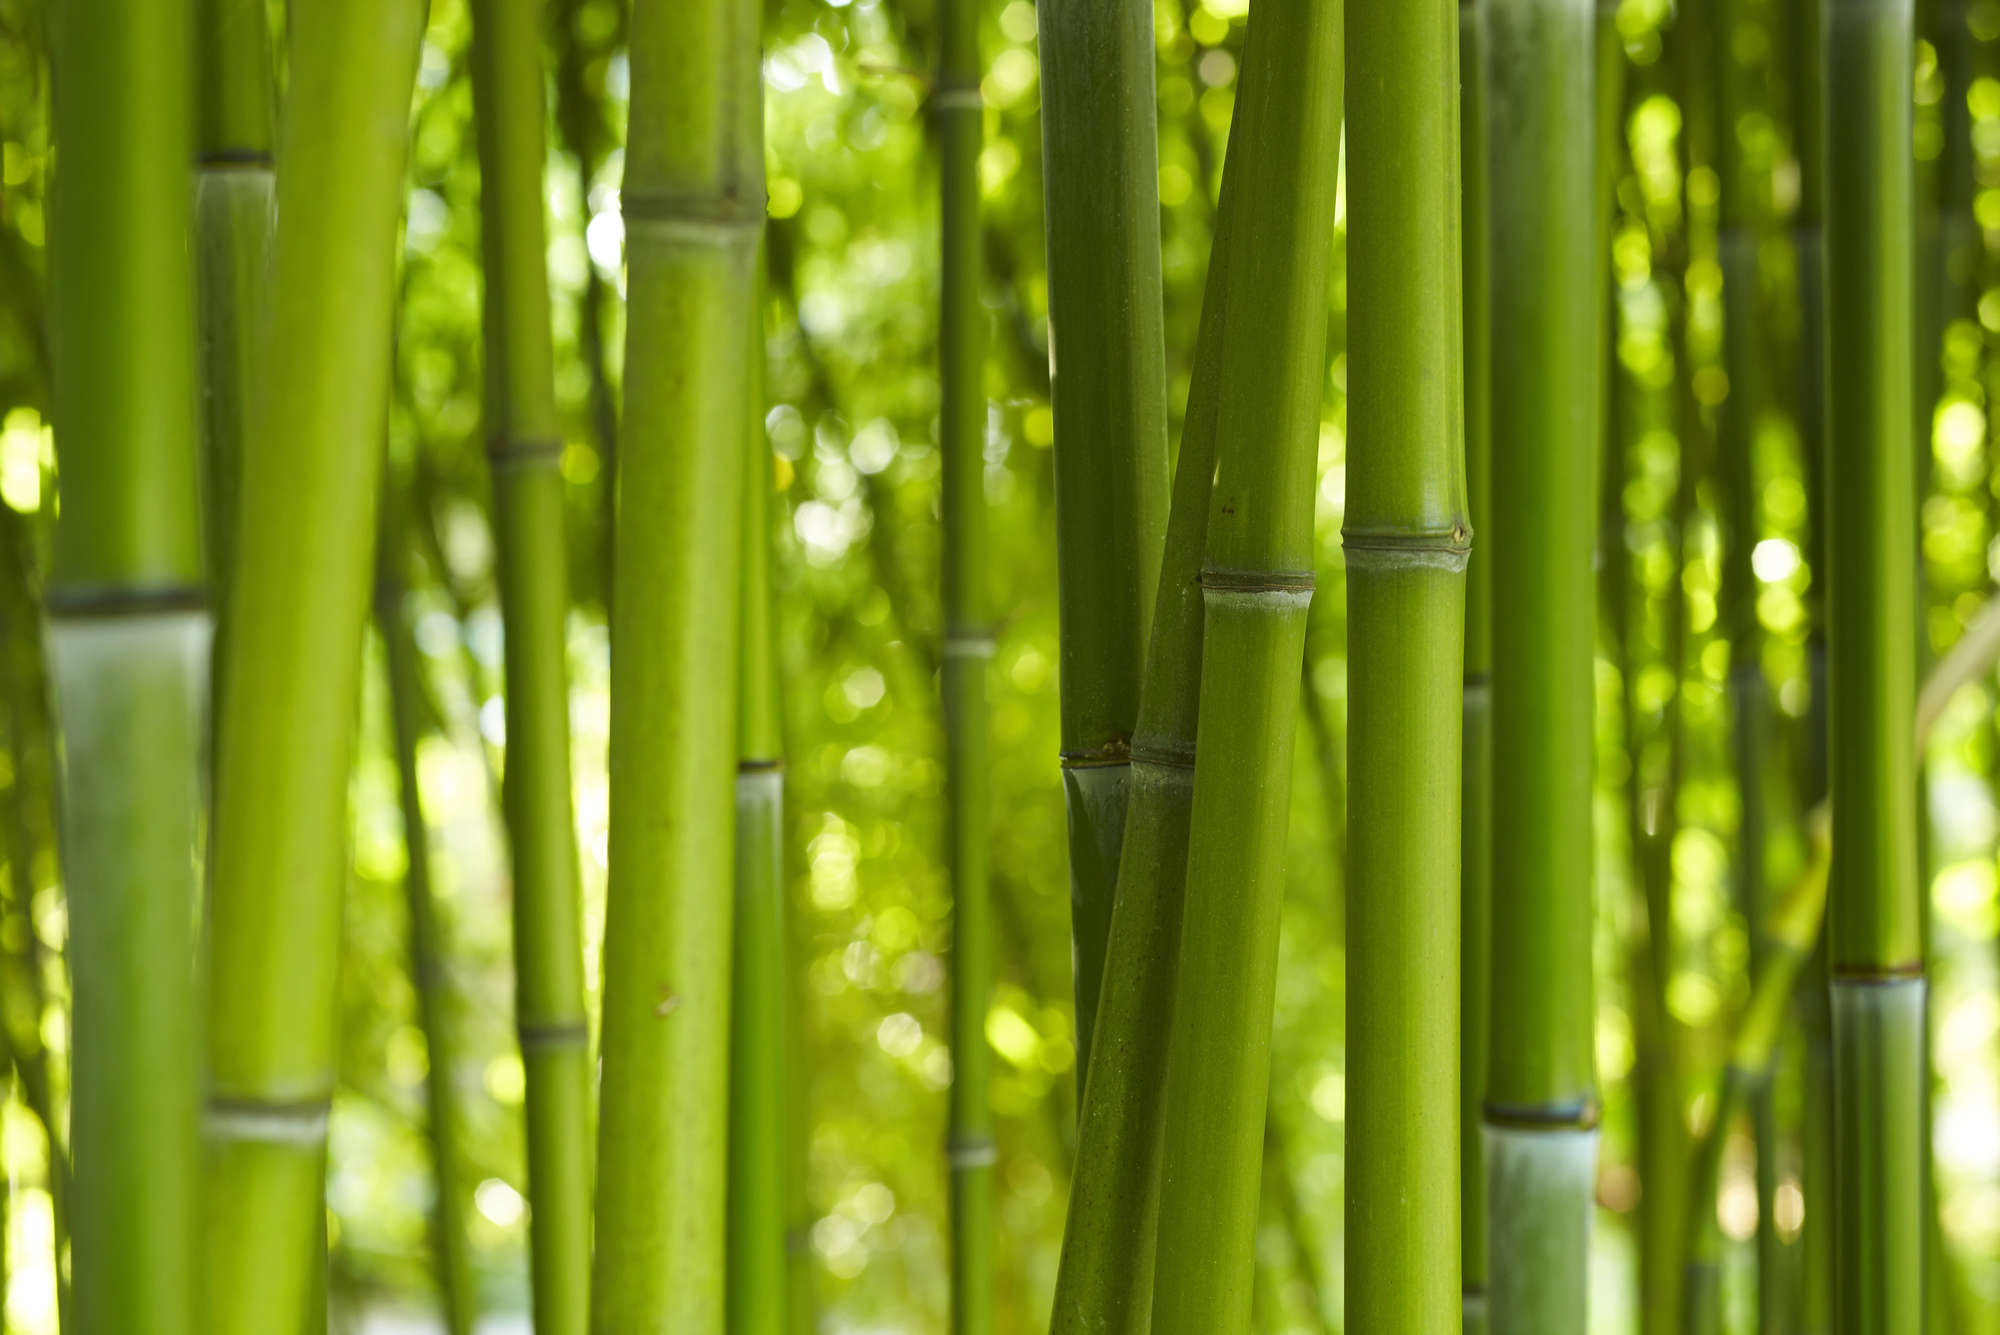             Bamboo in Green Wallpaper - Premium Smooth Non-woven
        